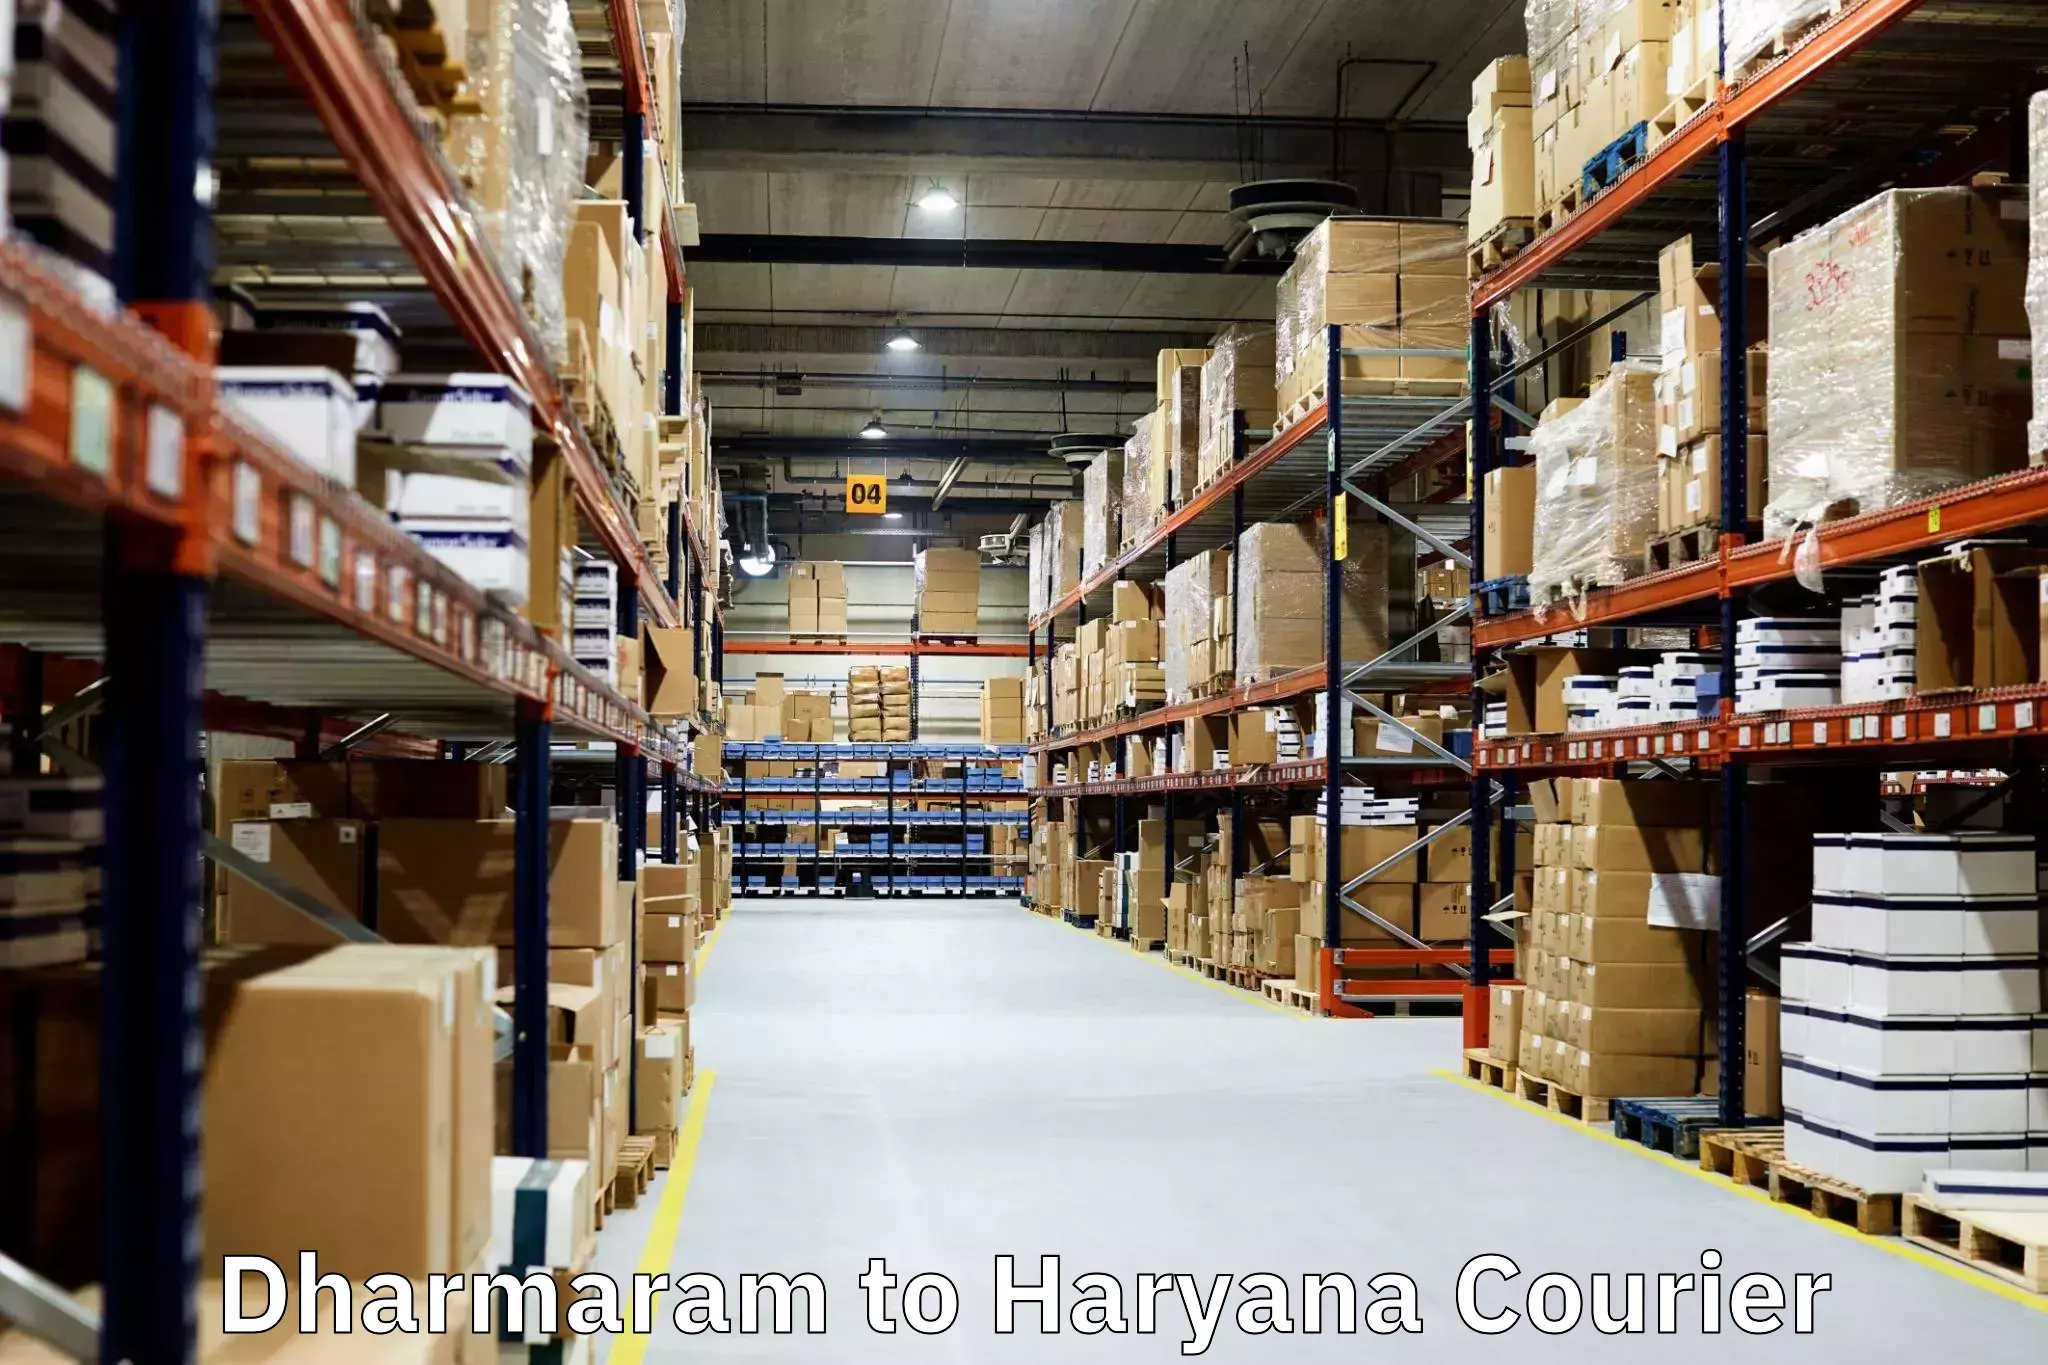 Moving and storage services Dharmaram to Chirya